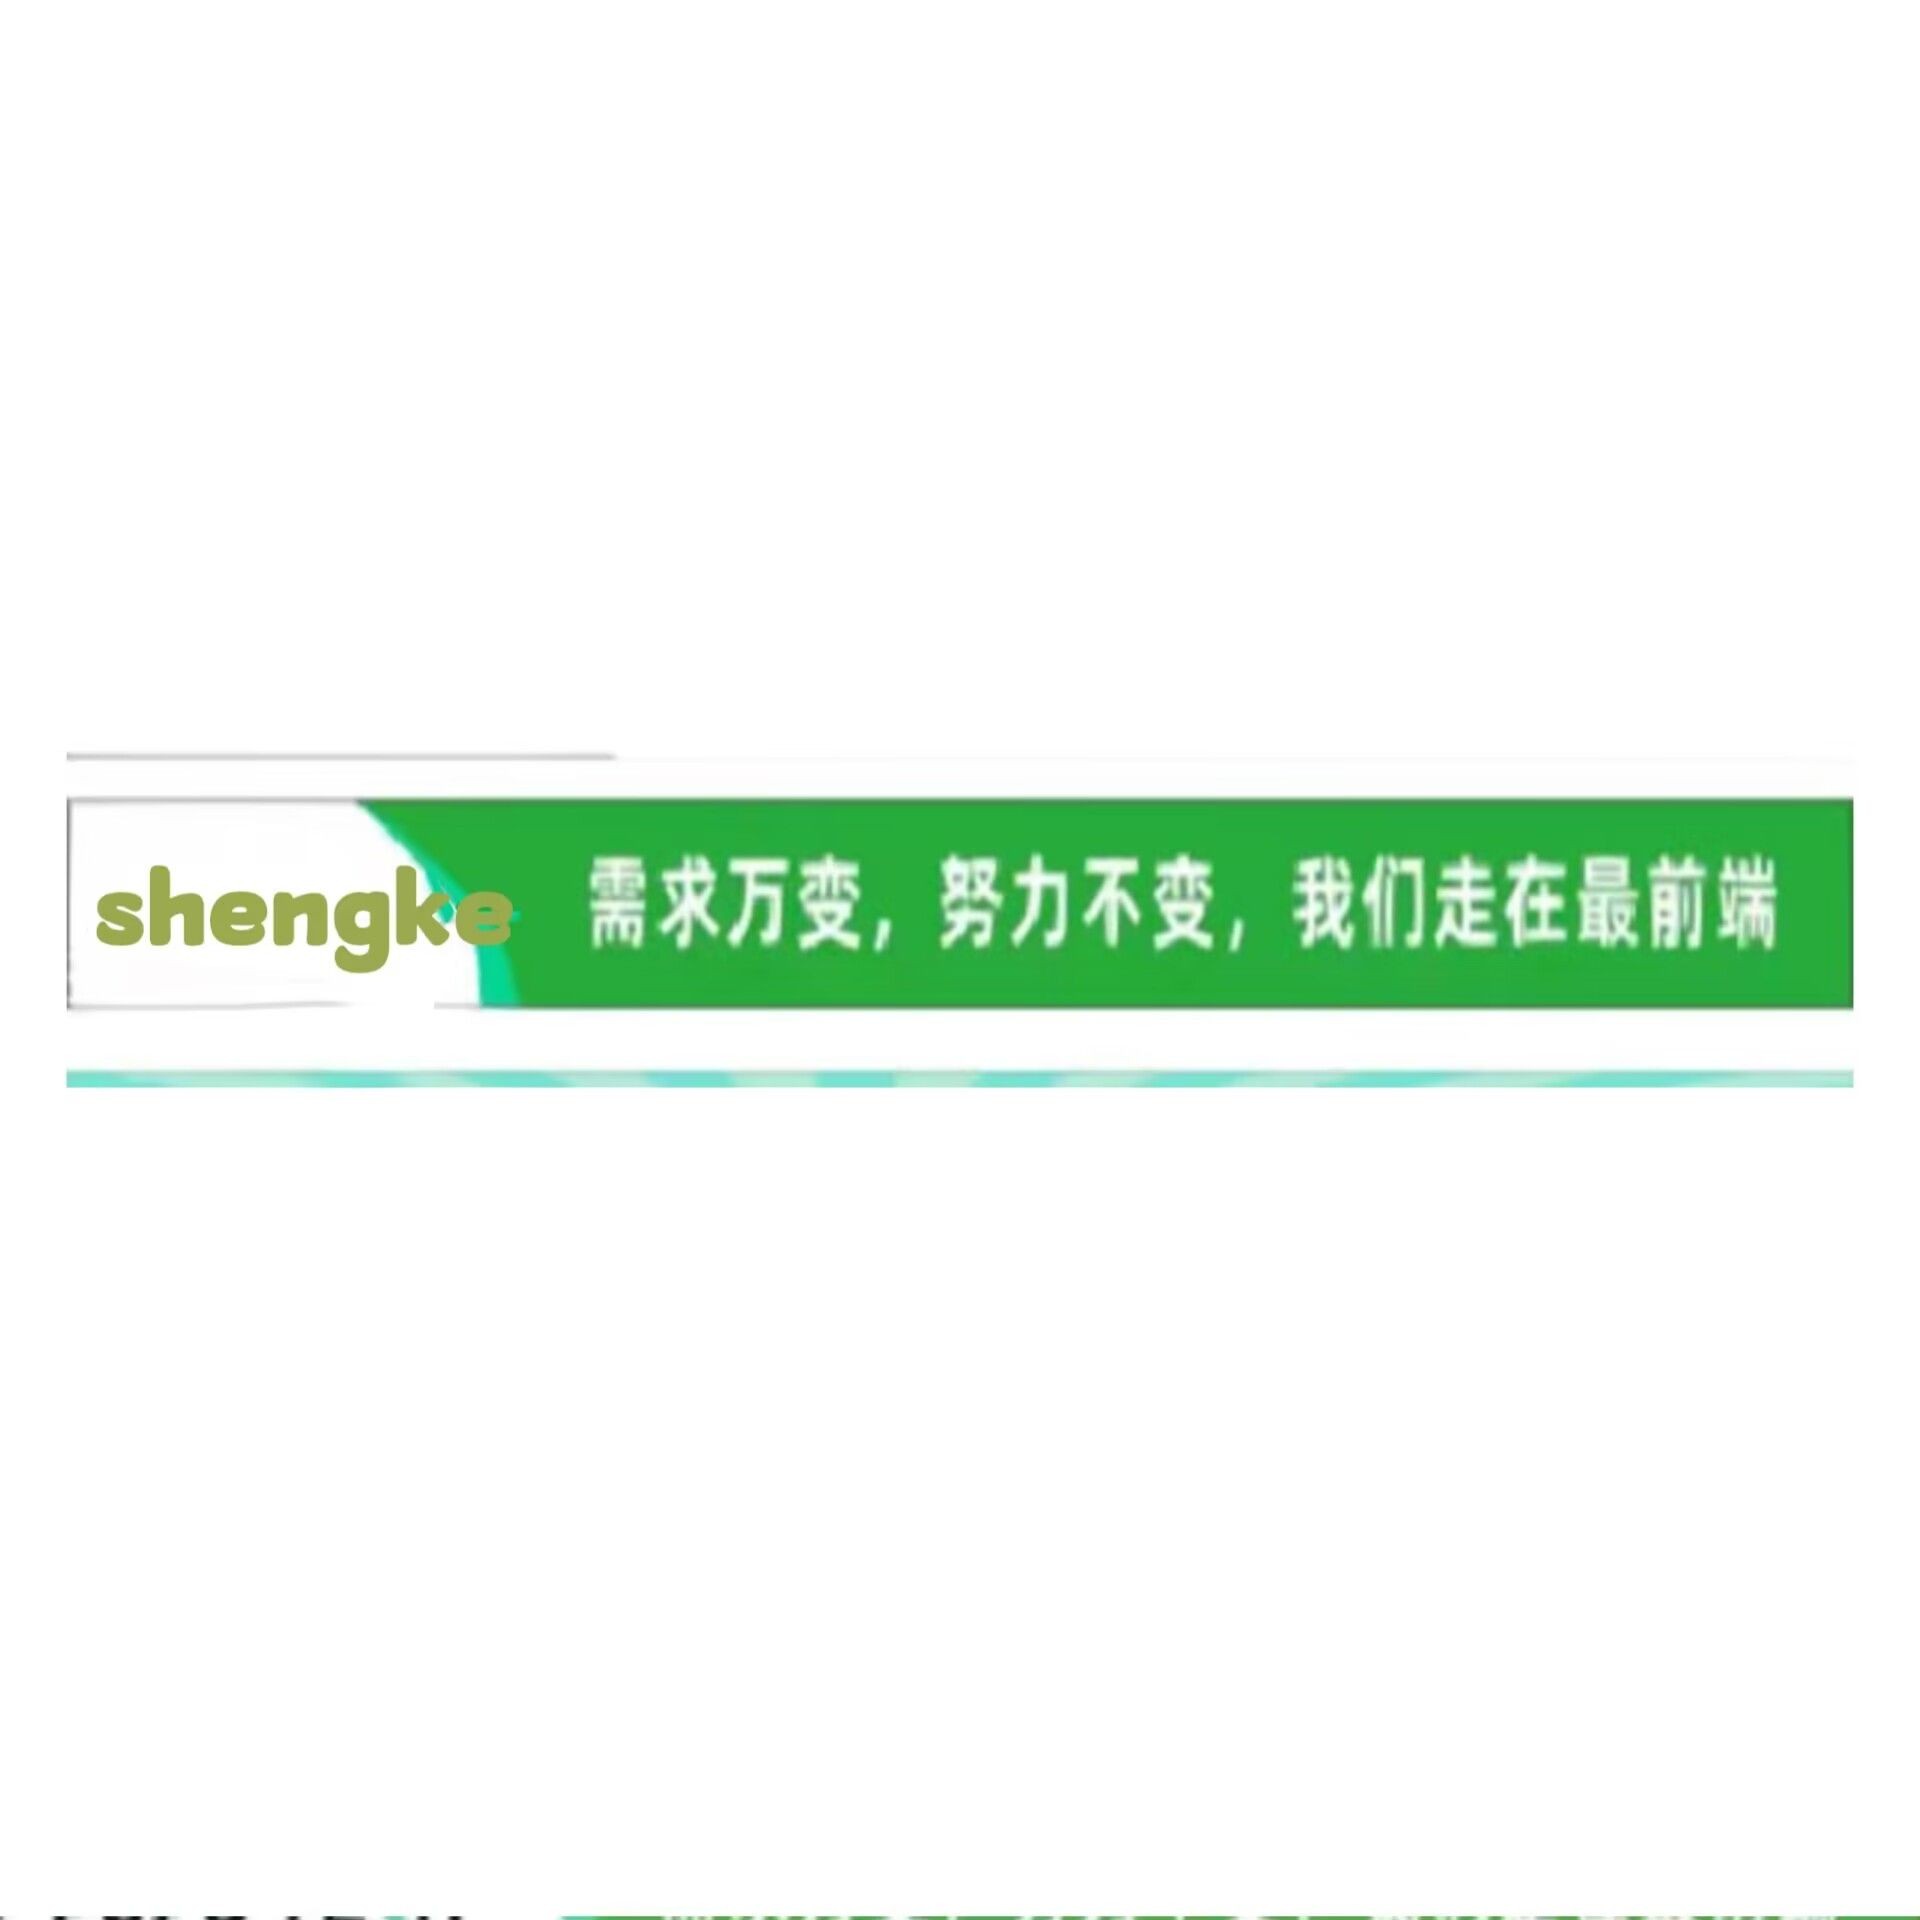 Shengke Co., Ltd